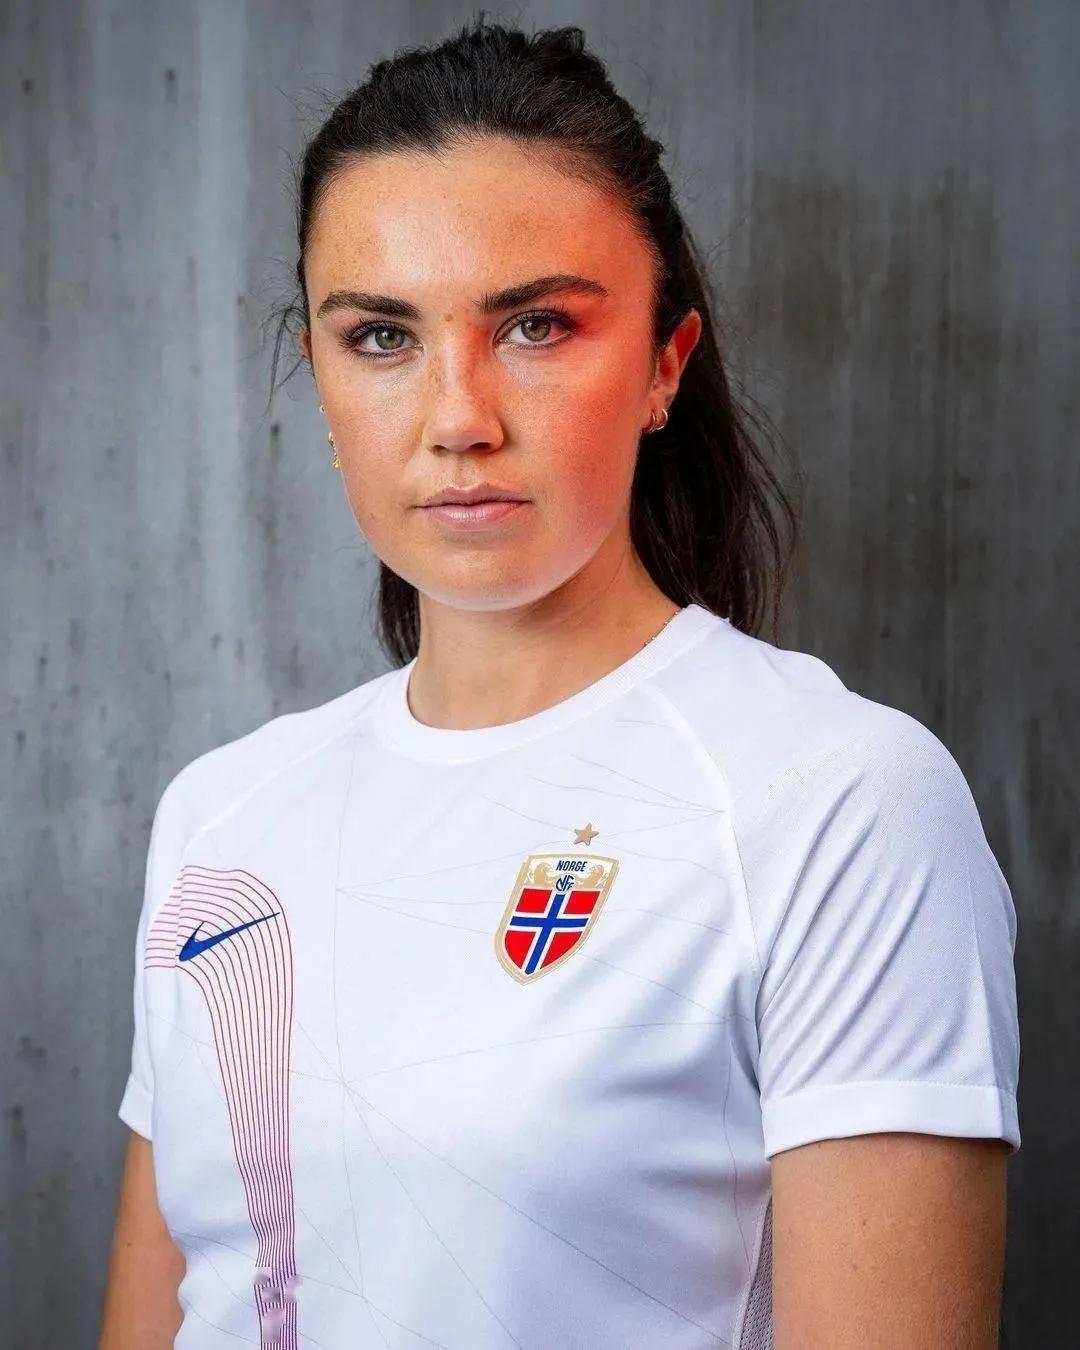 女足世界杯32强巡礼之三挪威队
是世界女足的传统强队。在1991年的首届女足世界